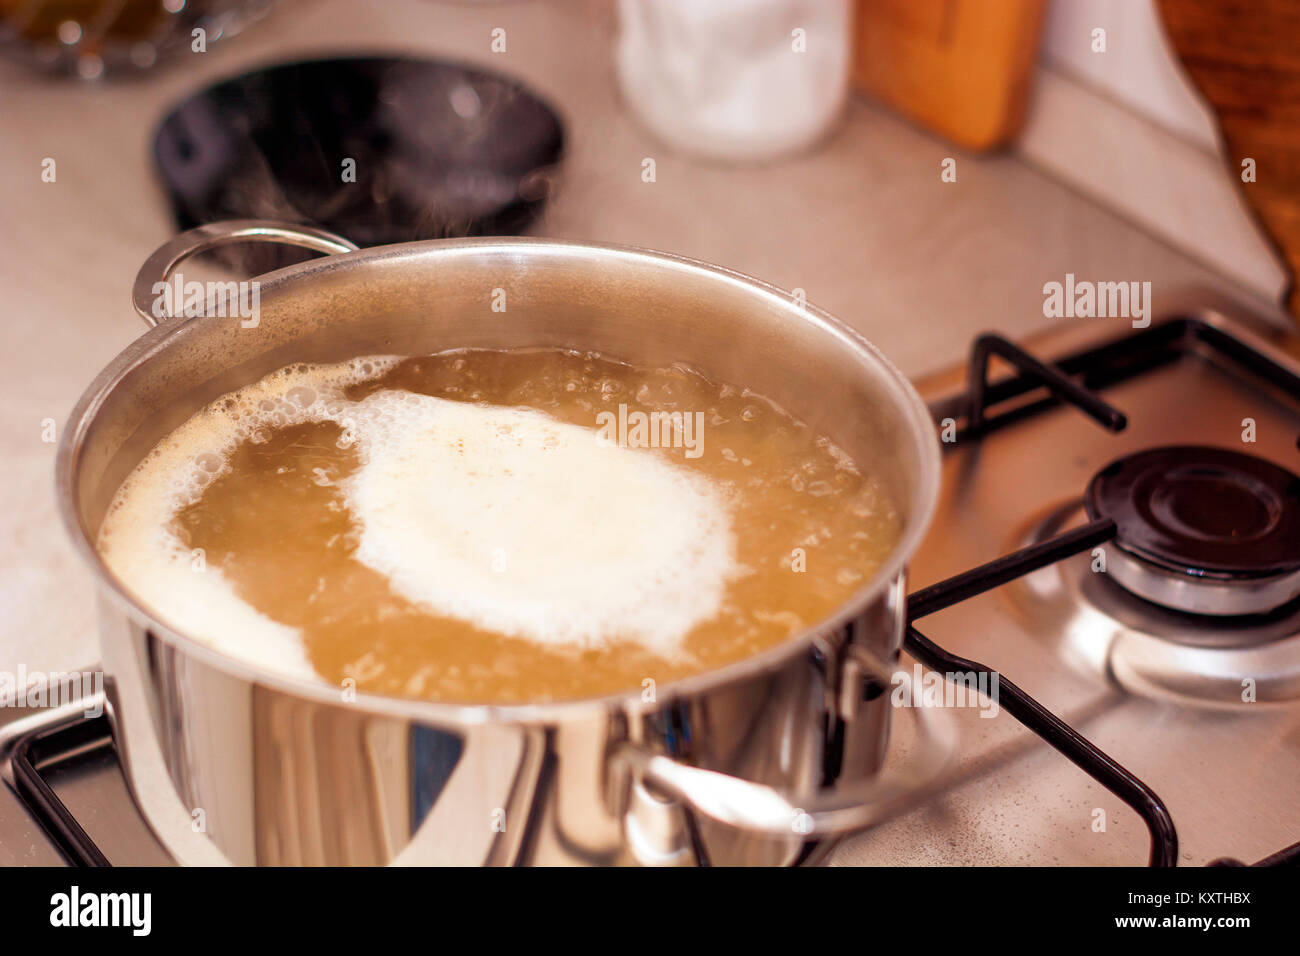 https://c8.alamy.com/comp/KXTHBX/boiling-pot-while-cooking-a-soup-KXTHBX.jpg